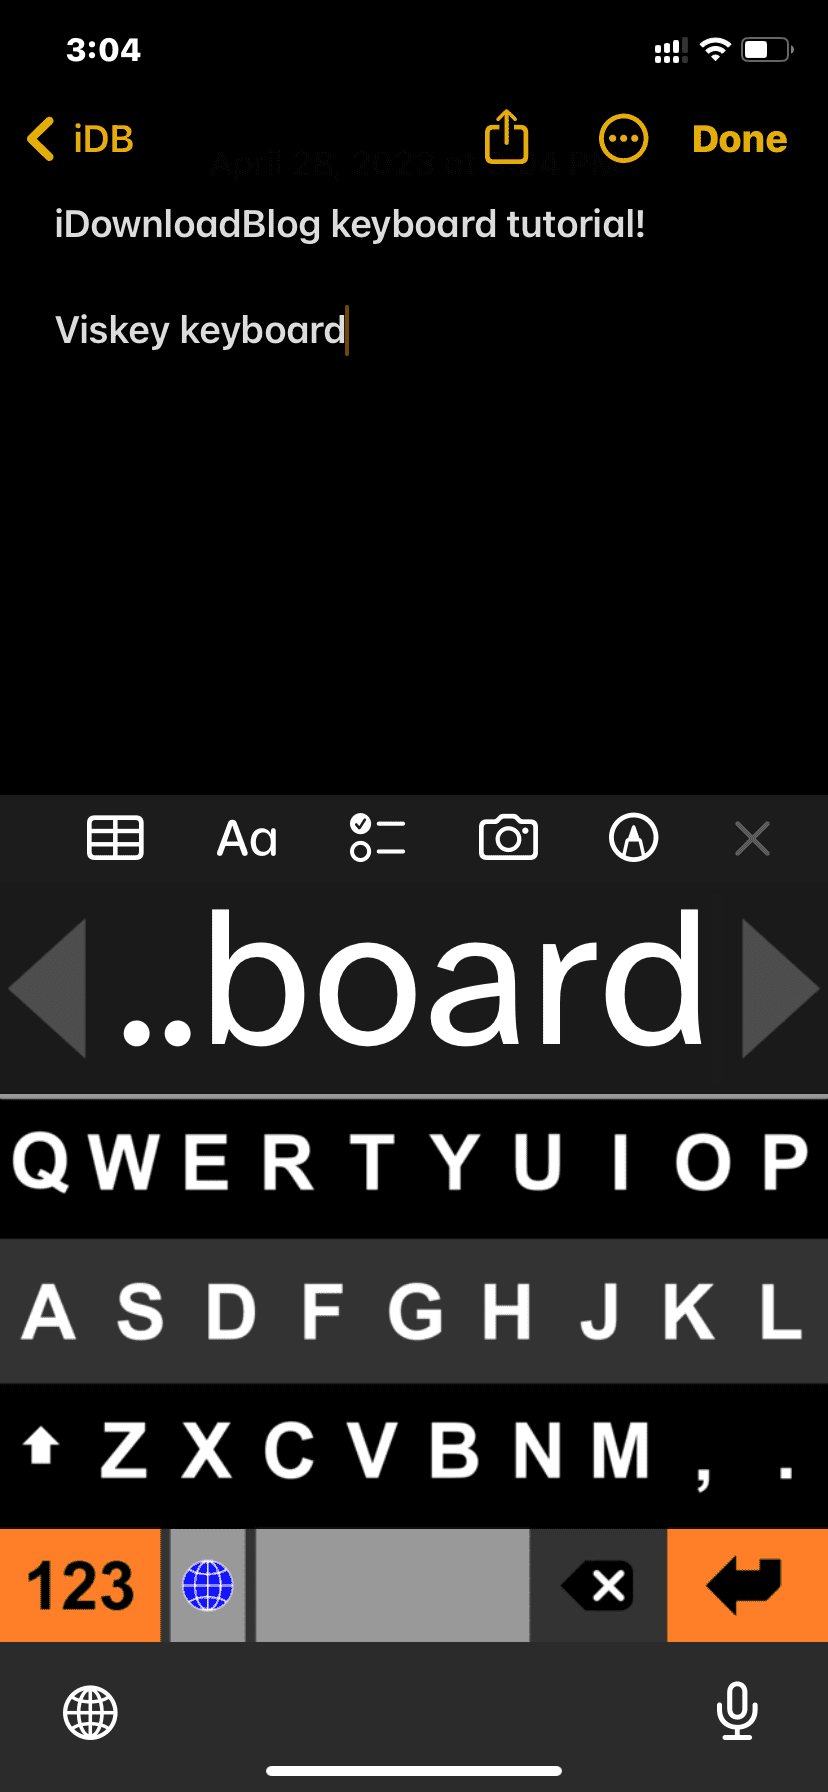 Viskey keyboard app on iPhone